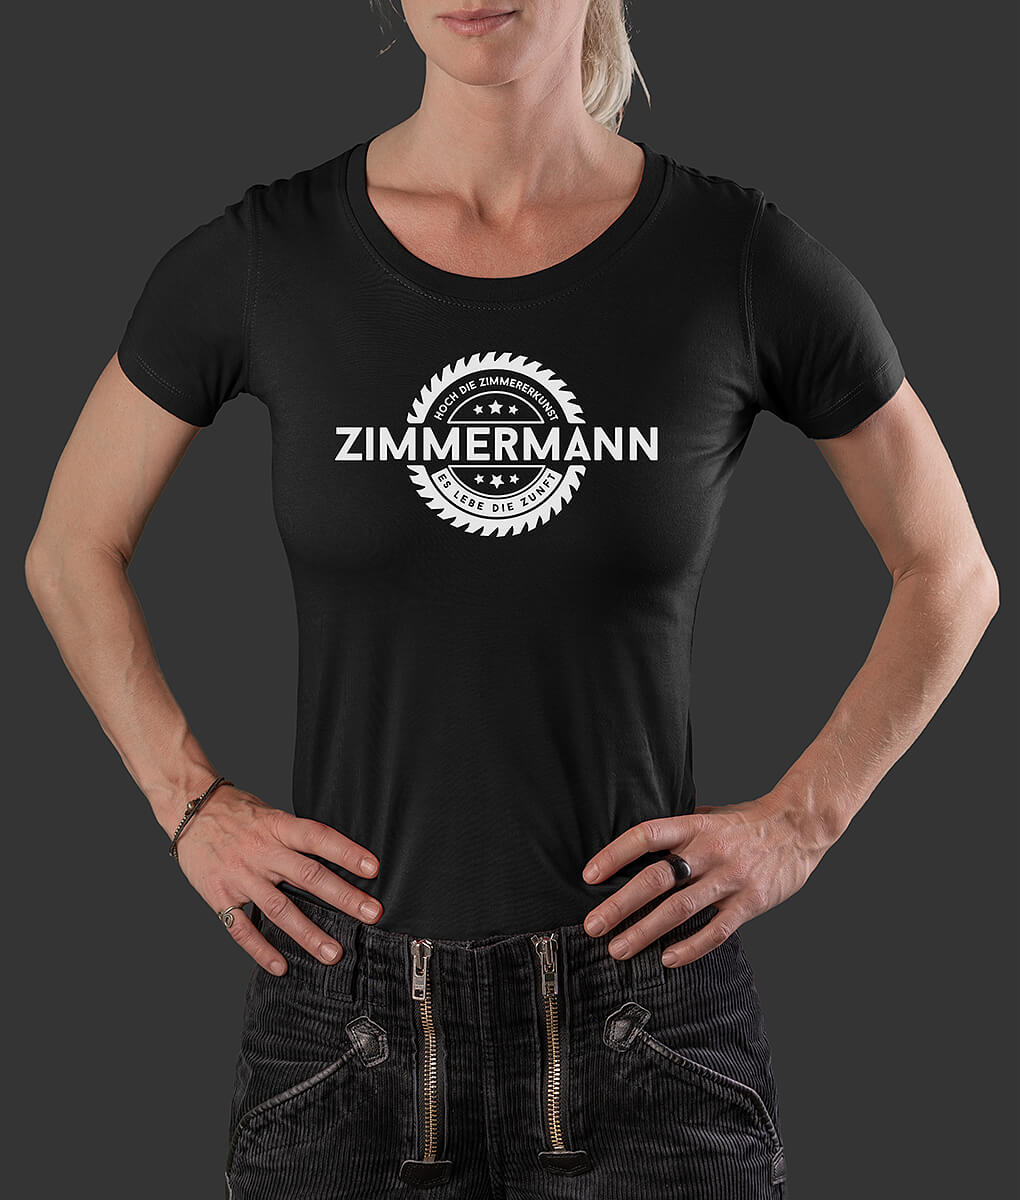 T-Shirt Louisa Säge Zimmermann Brust schwarz S